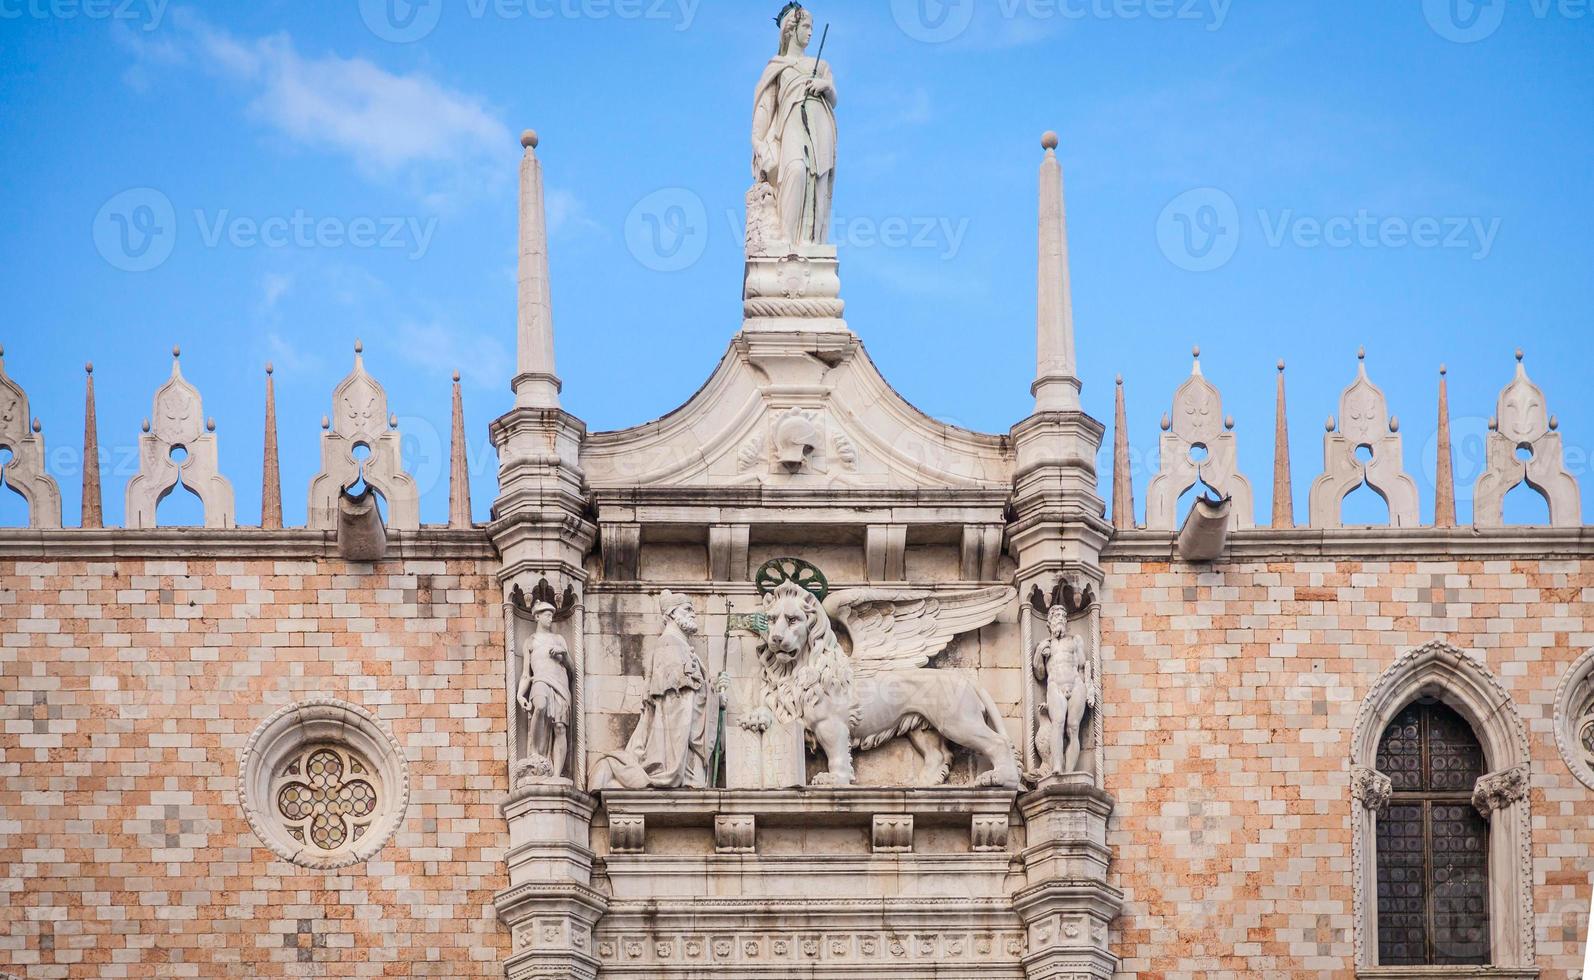 veneza, itália - detalhe do palácio ducal foto